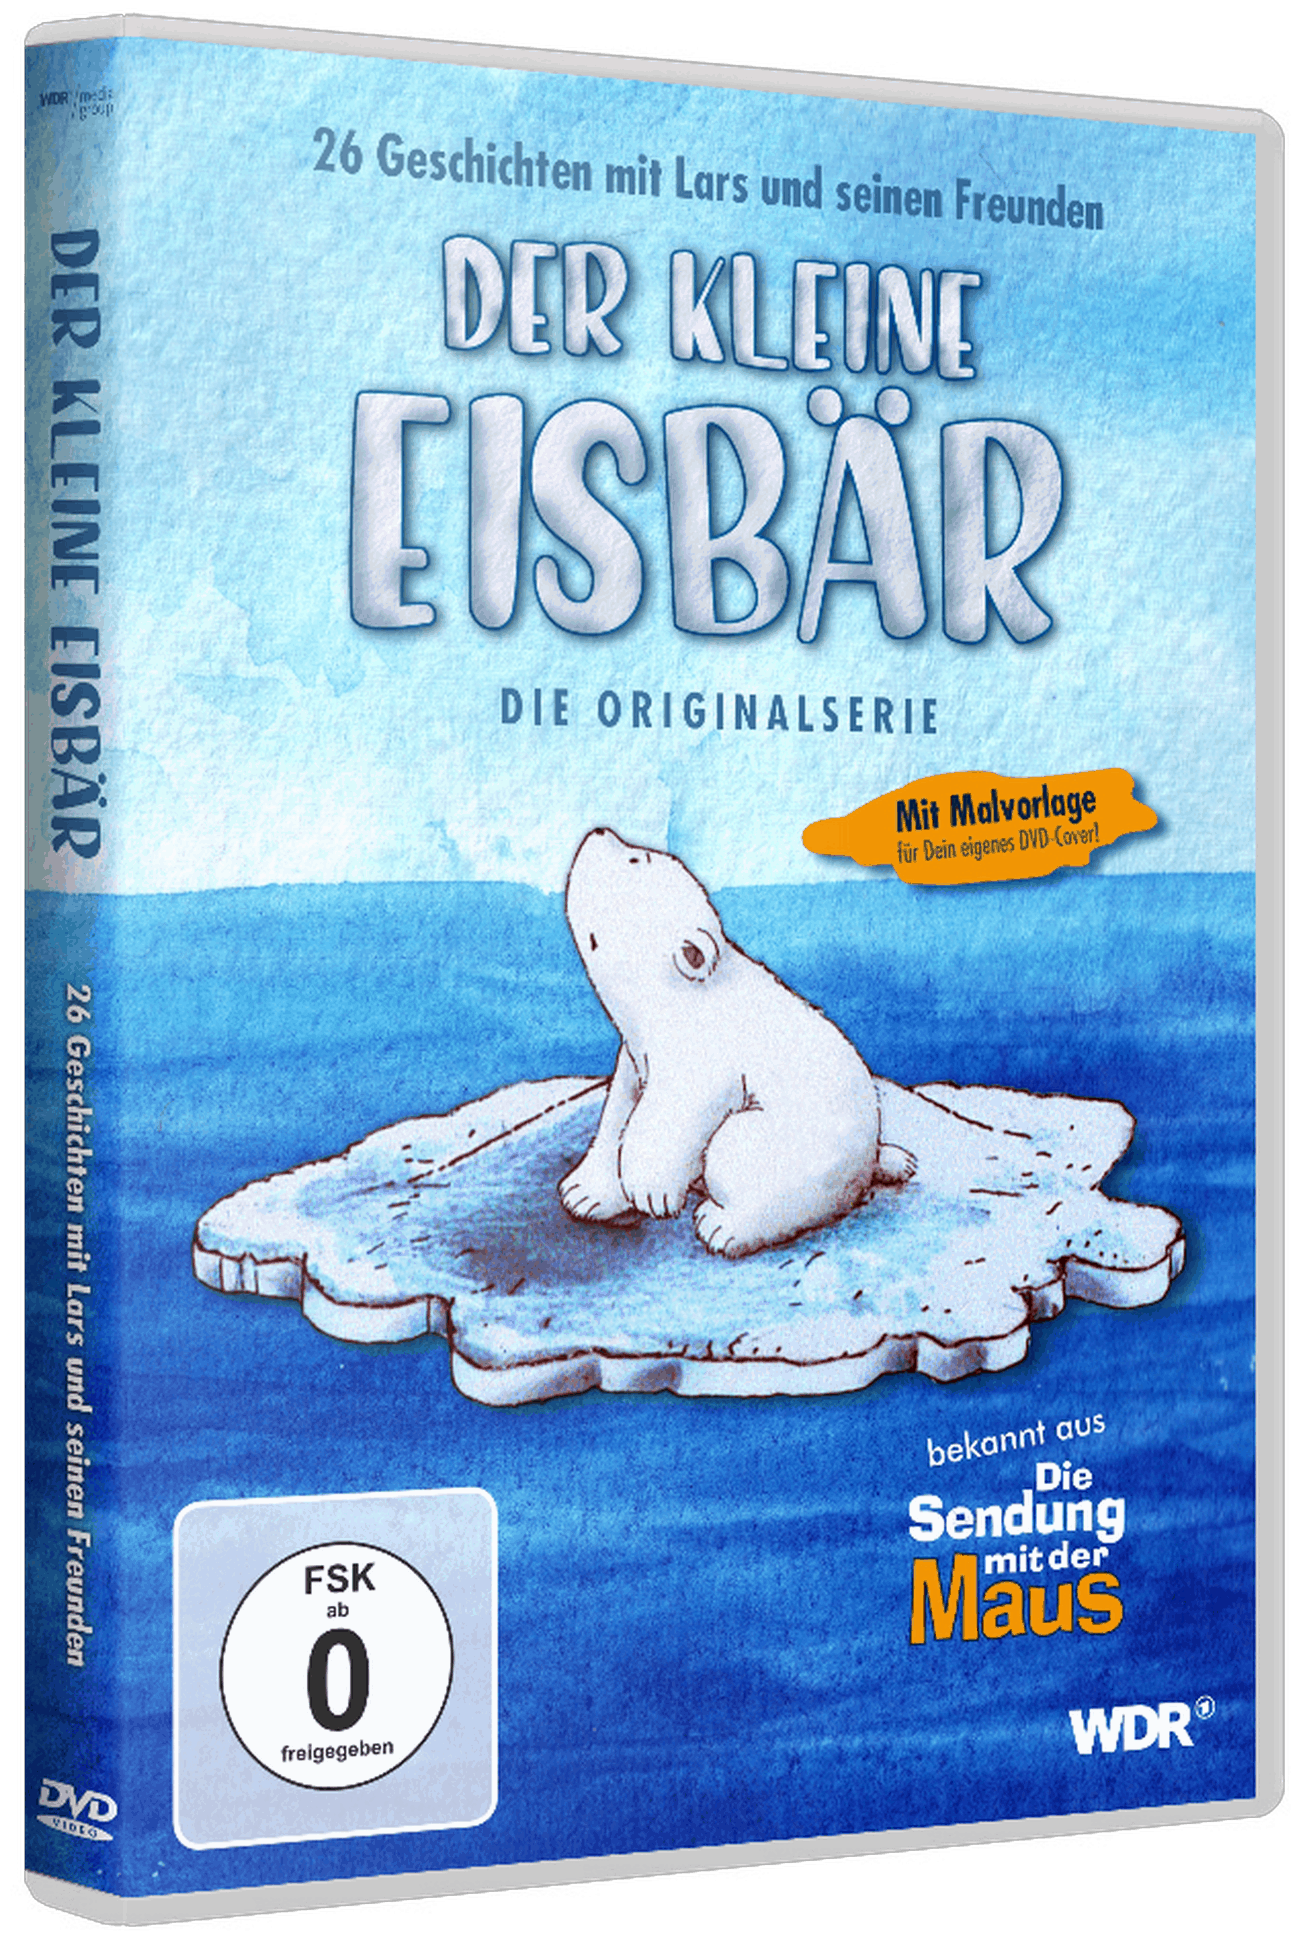 Der kleine Eisbär ab 16. Oktober als DVD und Digital